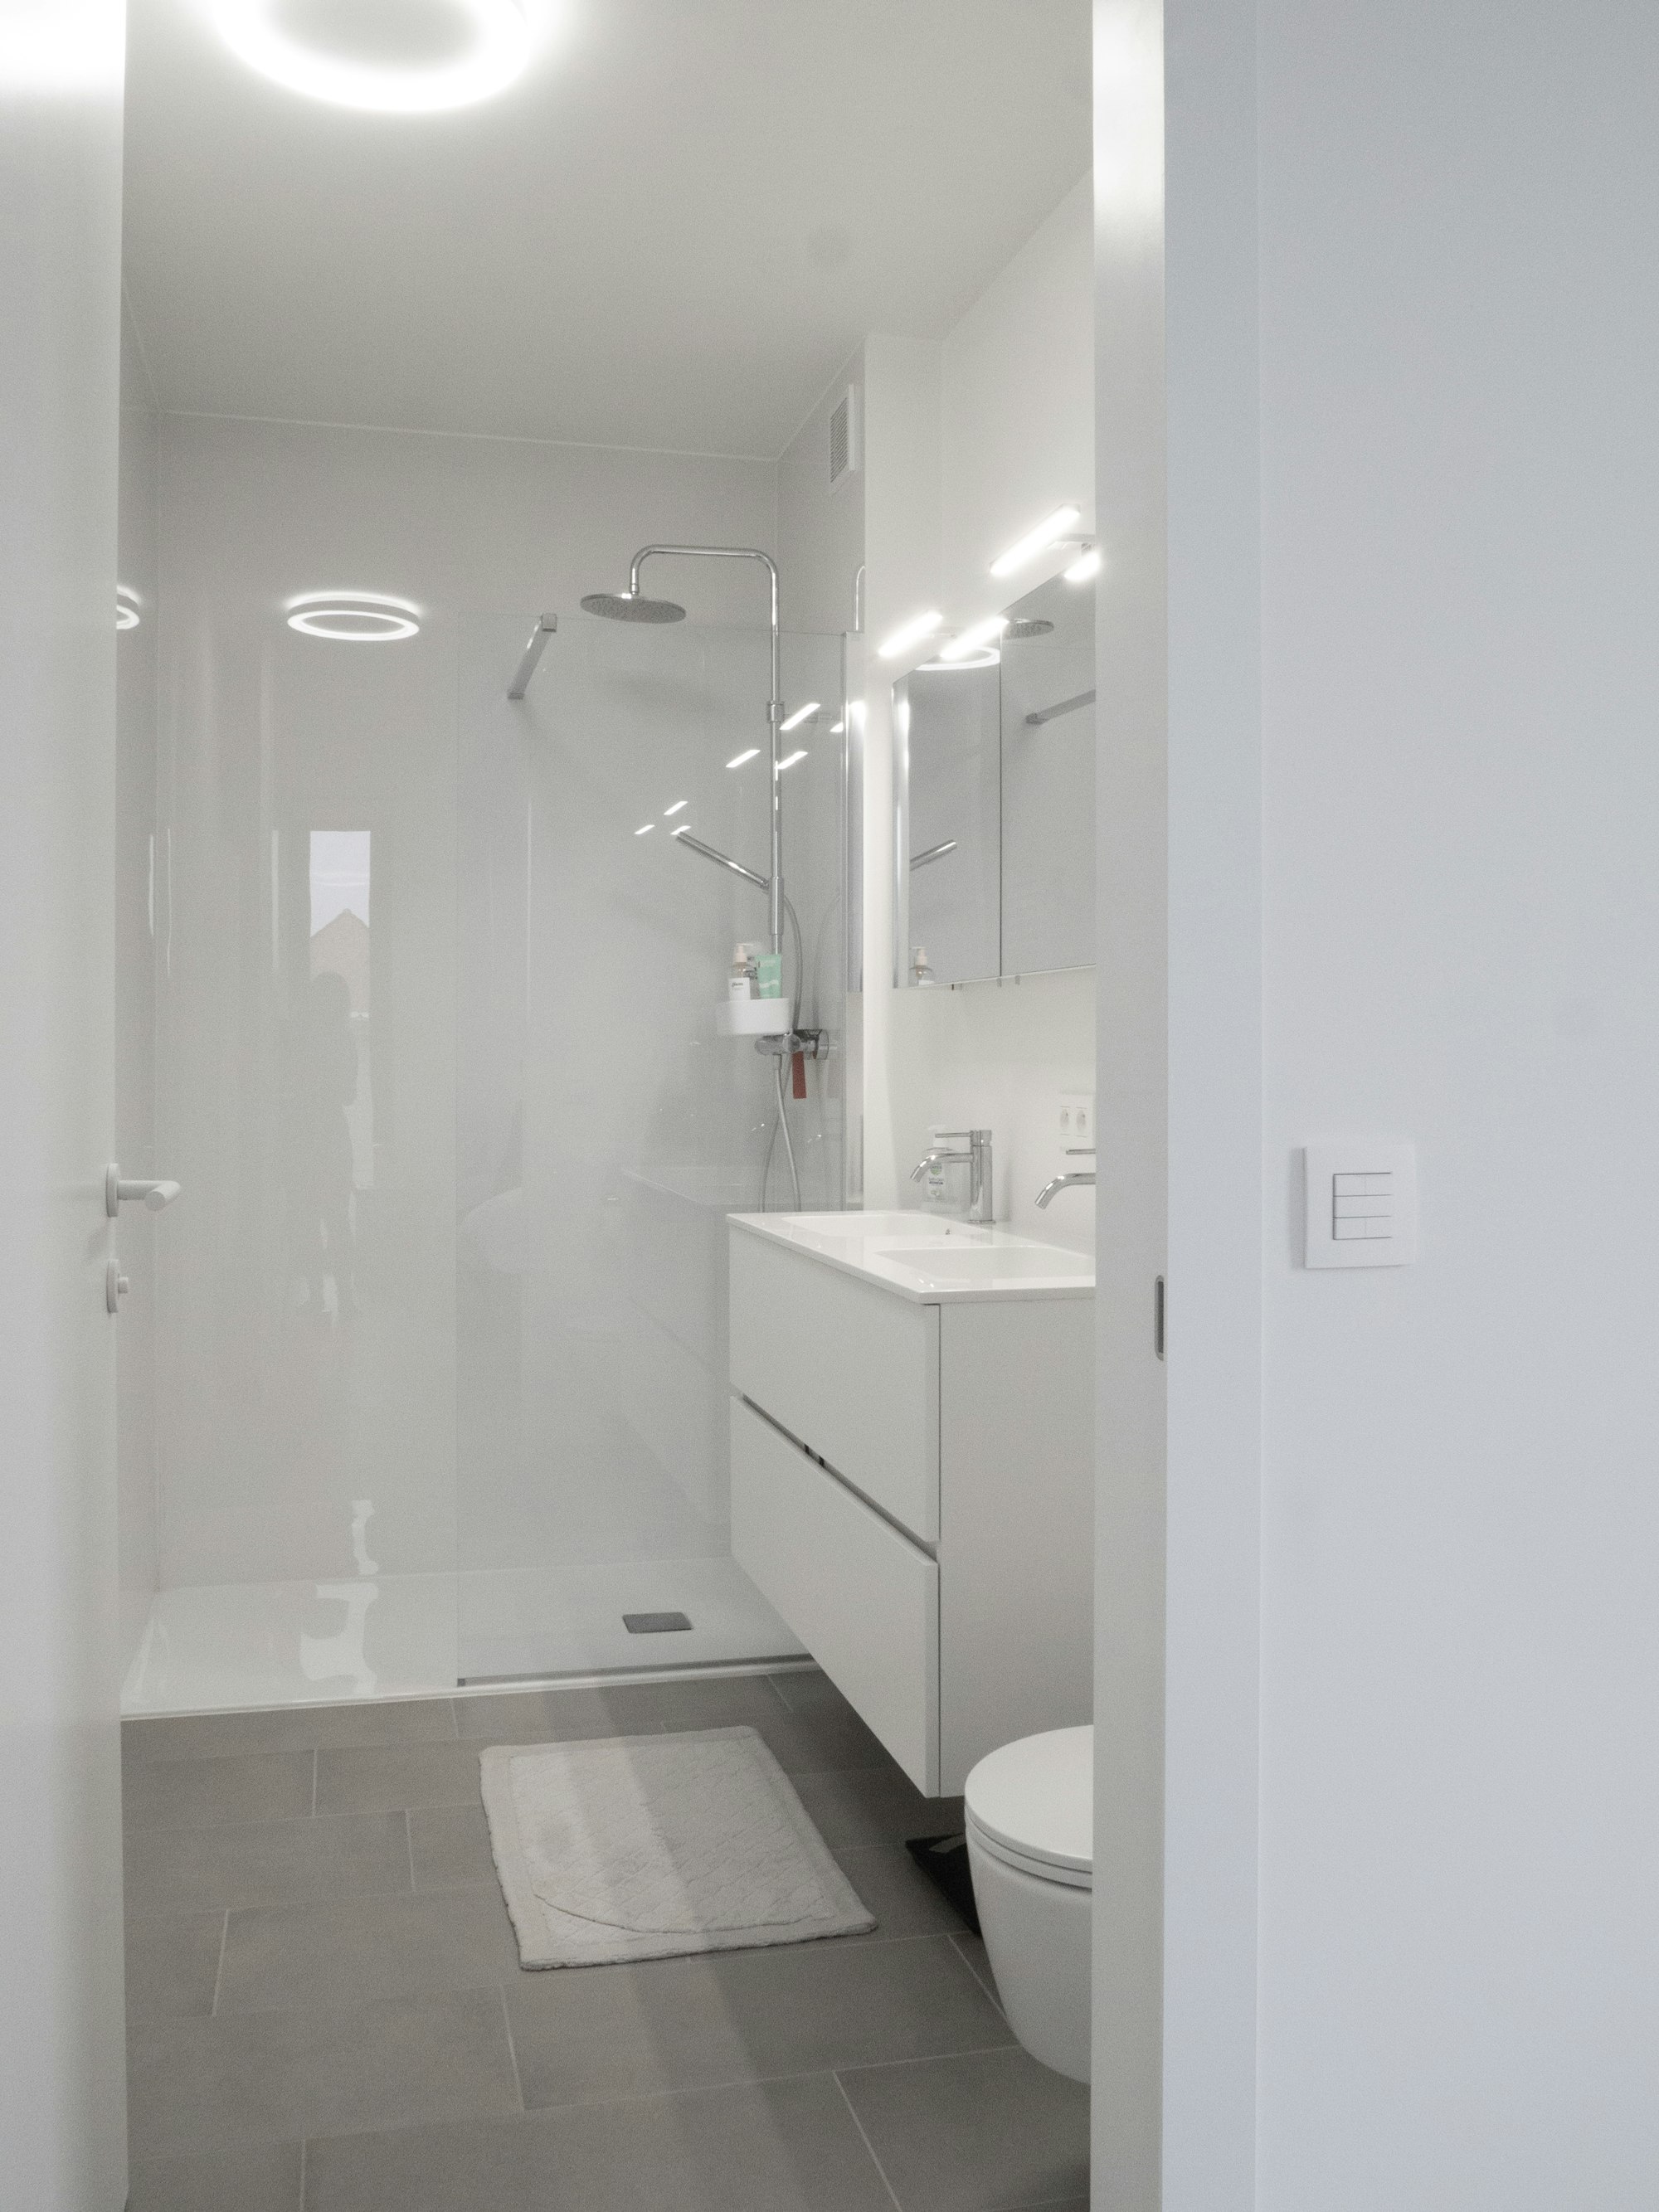 Skilpod #140 - interieur badkamer met toilet en inloopdouche